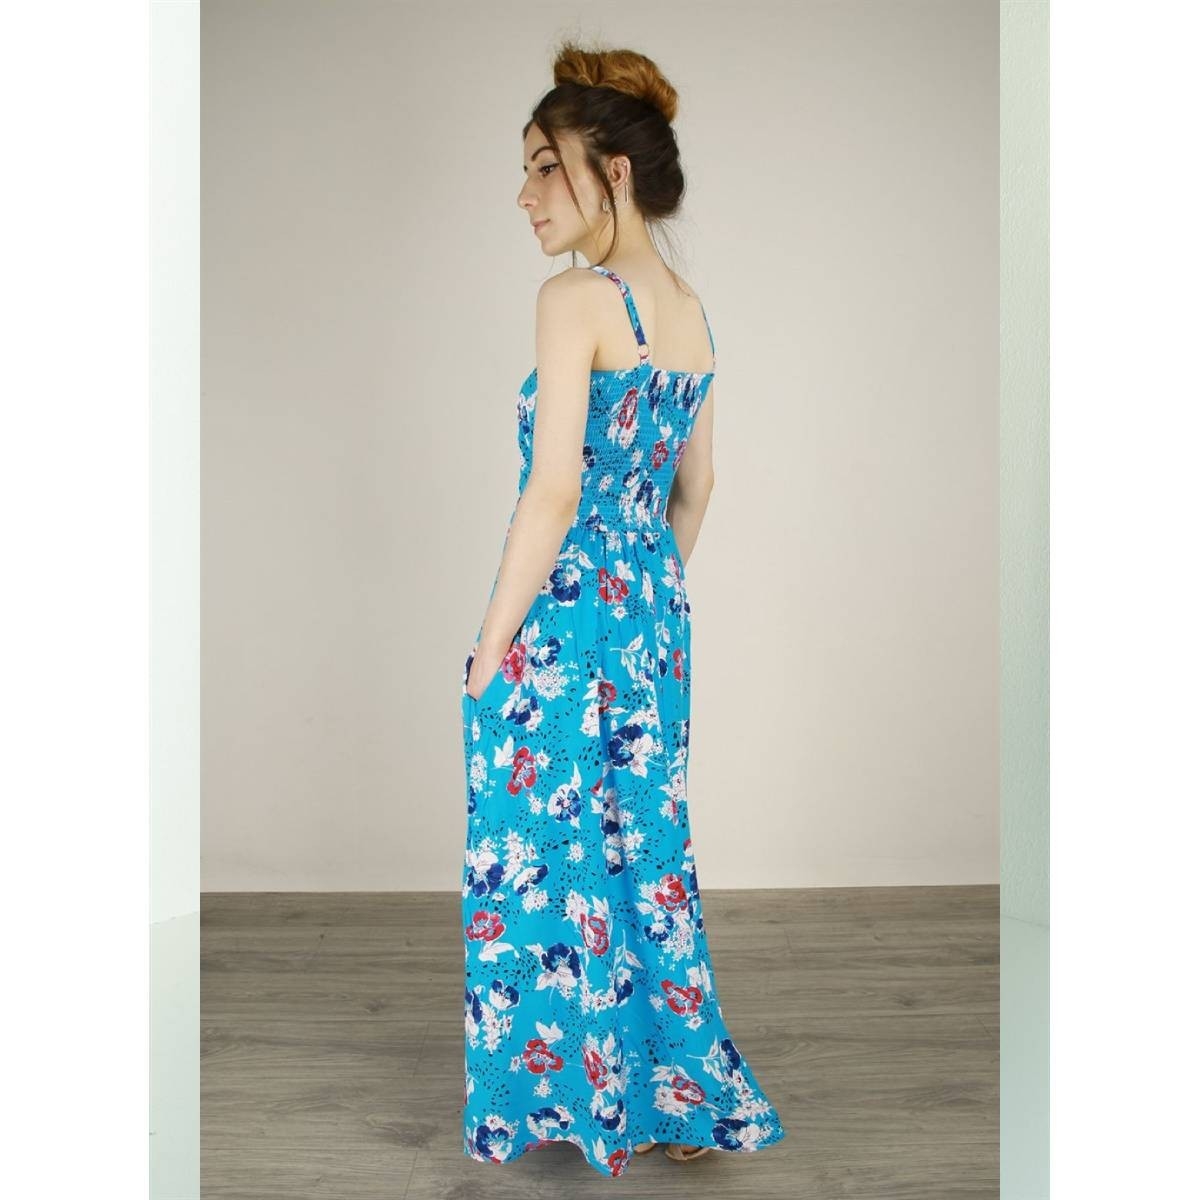 Flo Kadın  Mavi  İp Askılı Cepli Çiçek Desenli Pamuklu Elbise. 4